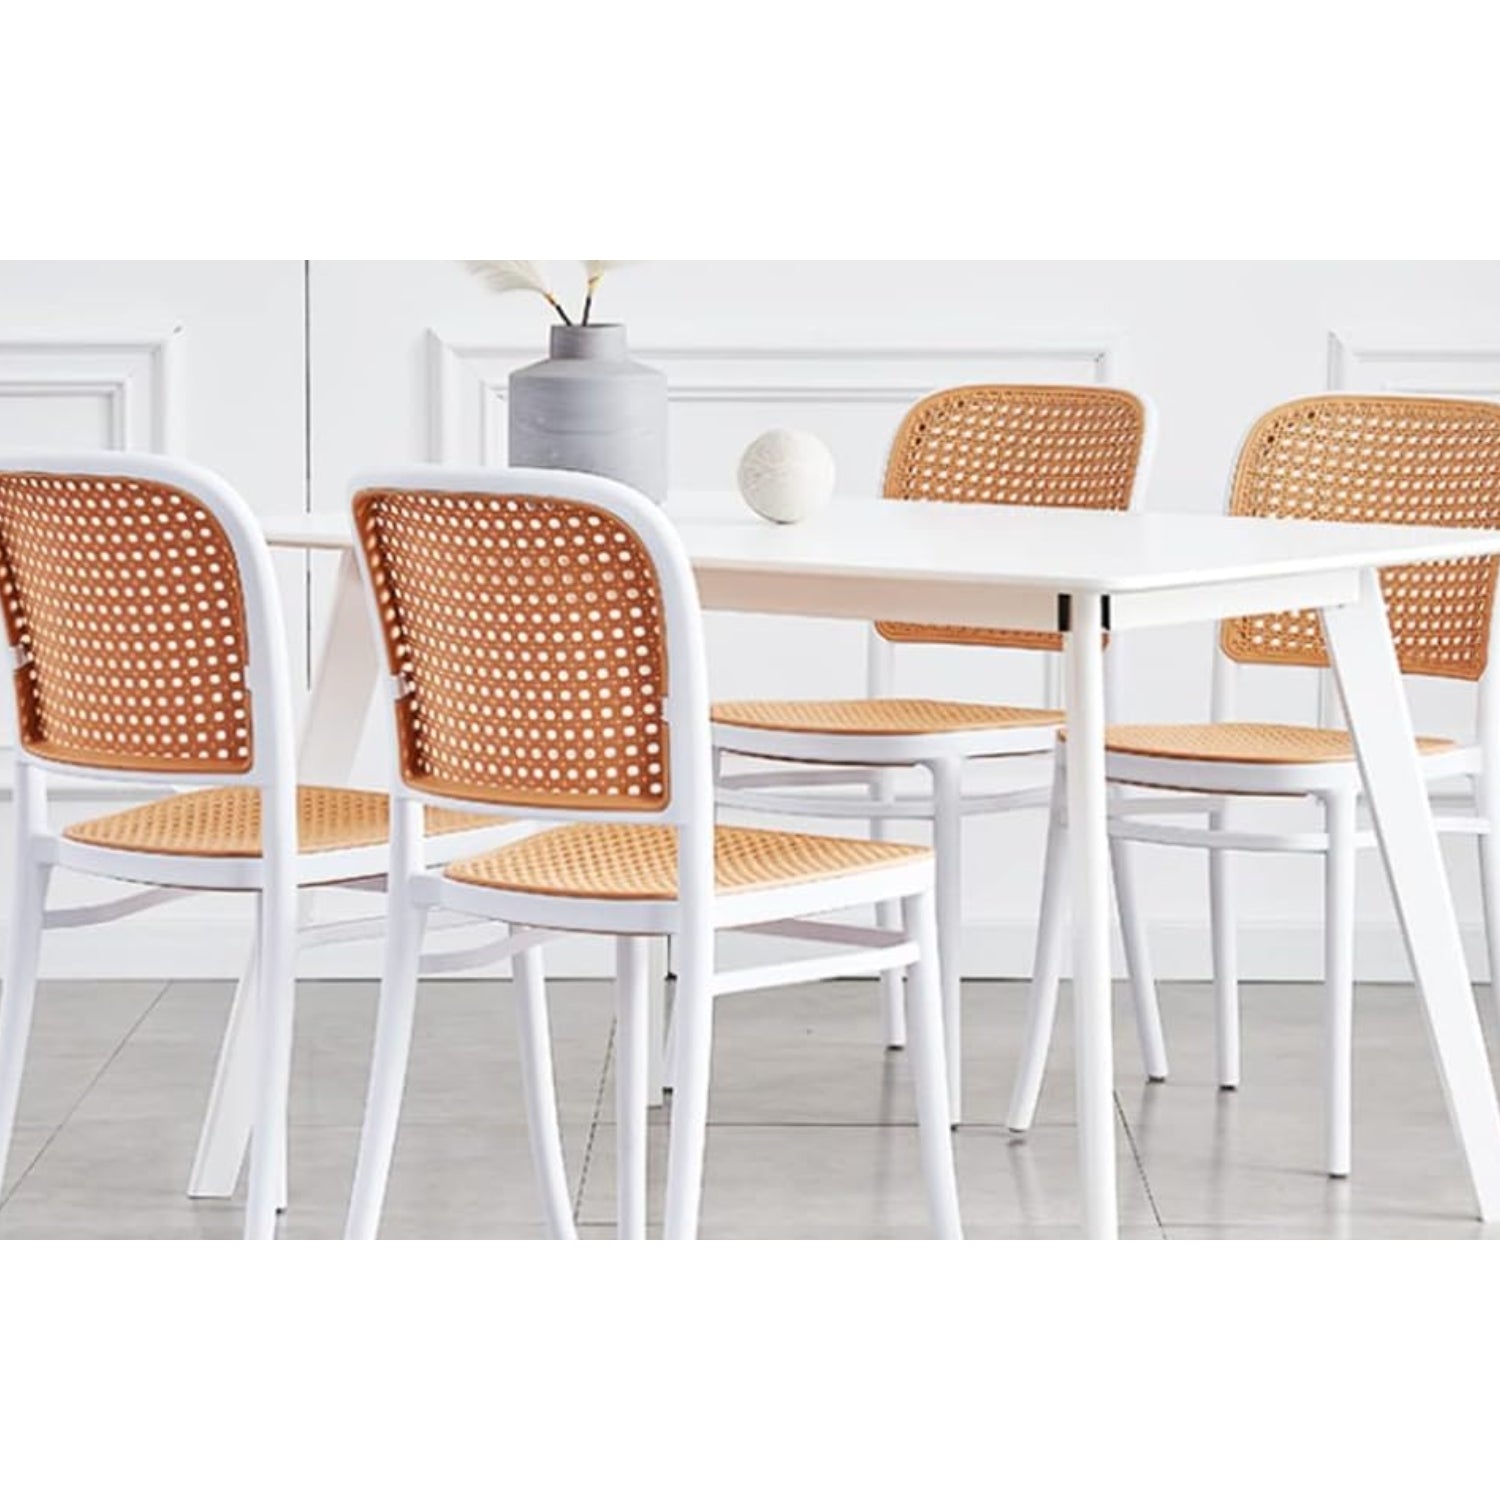 villa nova rattan weave plastic chair white dining setup